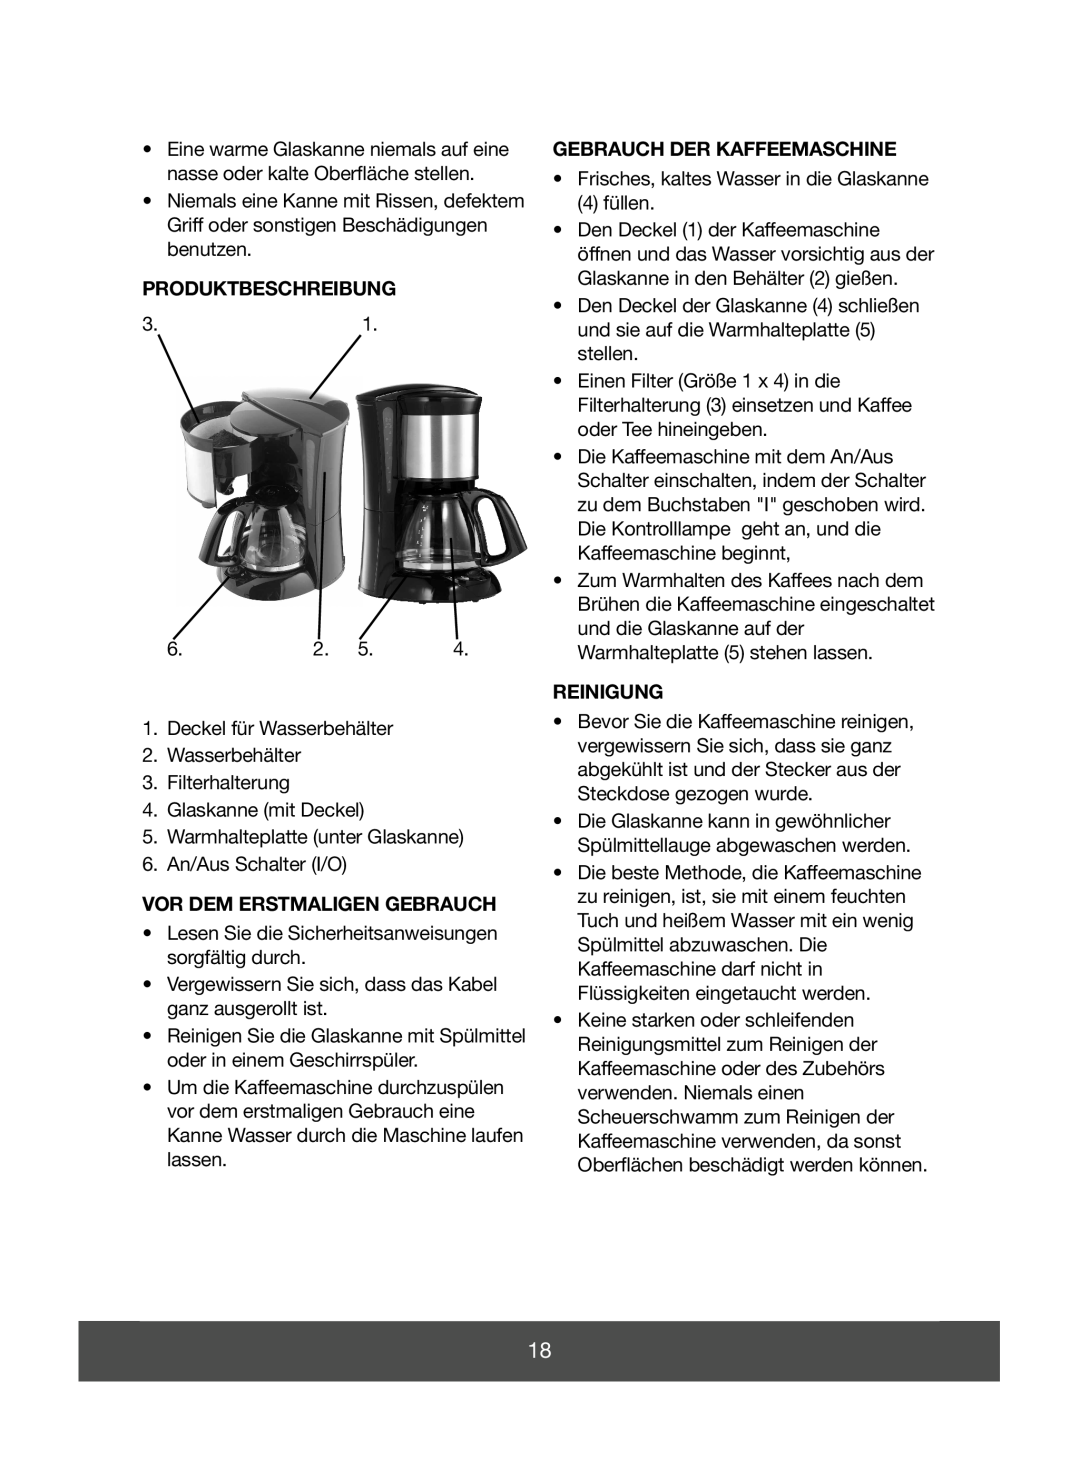 Melissa 645-085 manual Produktbeschreibung, Vor Dem Erstmaligen Gebrauch, Gebrauch Der Kaffeemaschine, Reinigung 